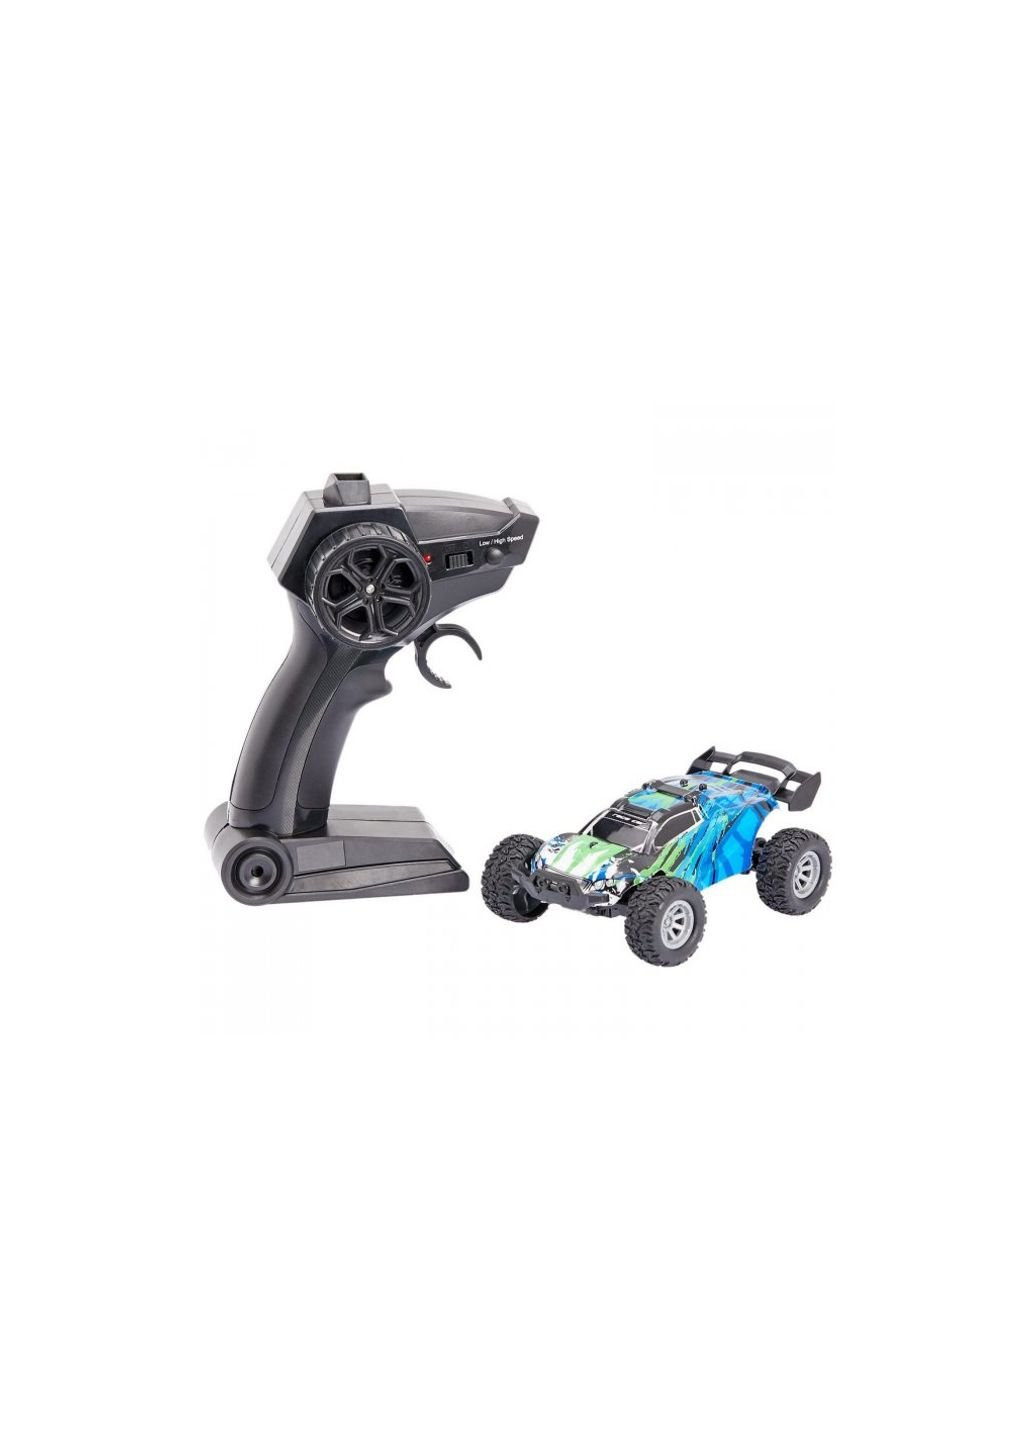 Радиоуправляемая игрушка Машинка Rapid Monster Blue (Q12 blue) Zipp Toys (254079188)